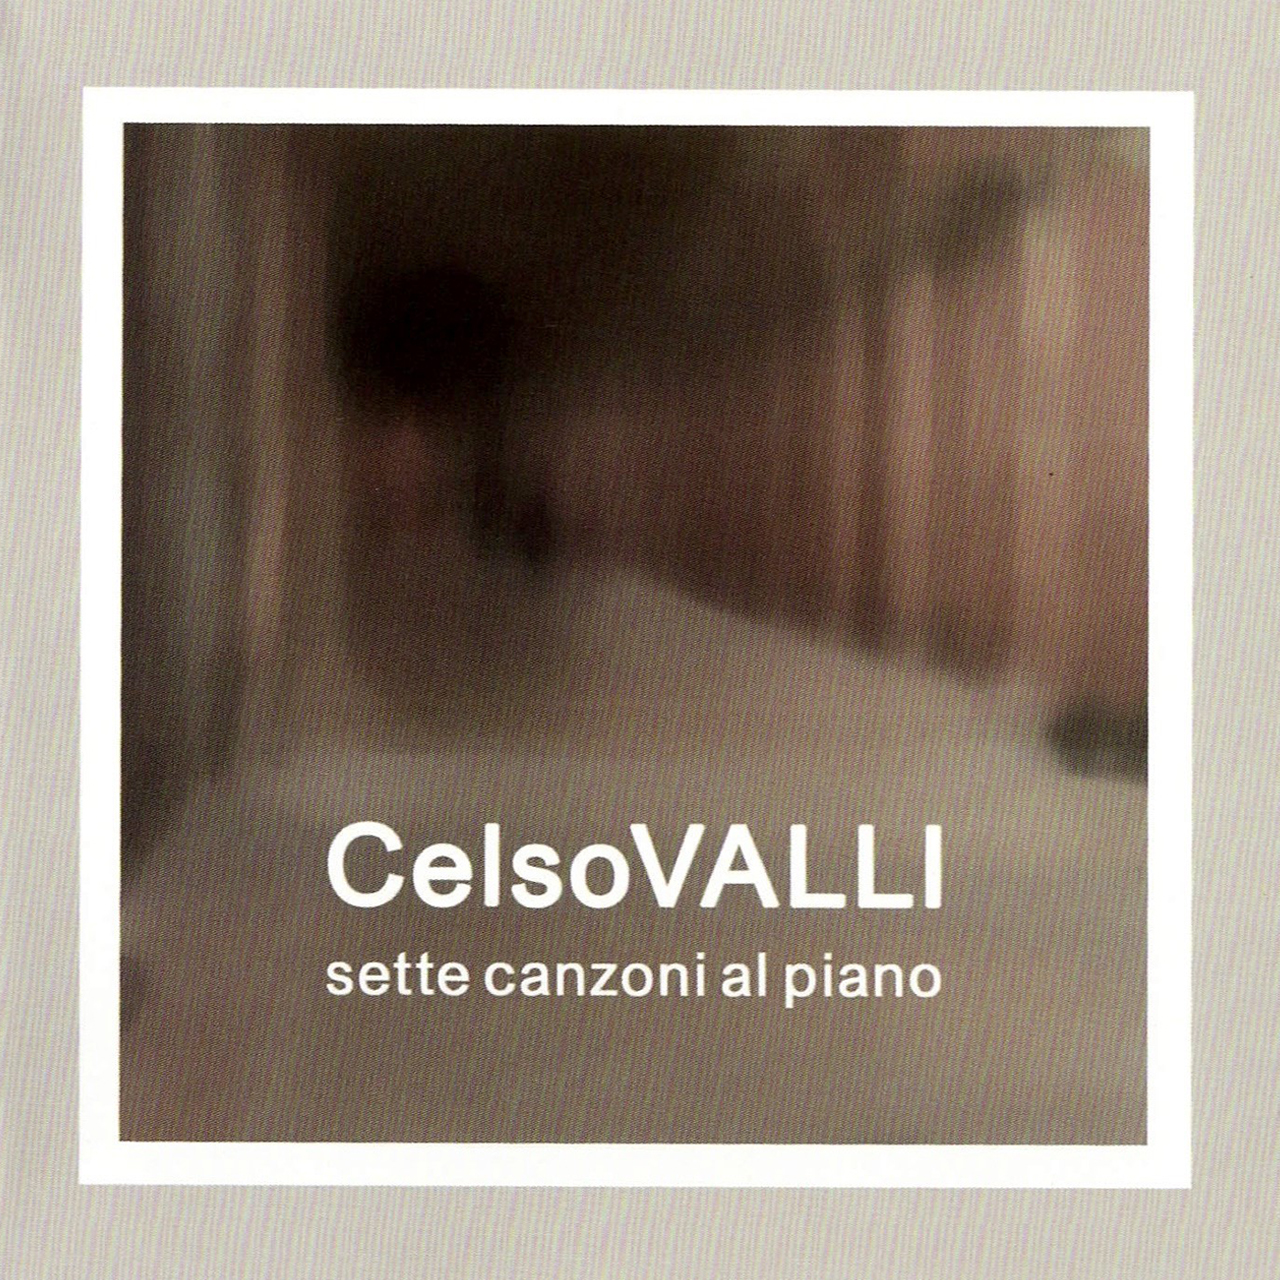 Sette Canzoni al Piano - Celso Valli | | Portfolio Giordano Mazzi | giordanomazzi.com